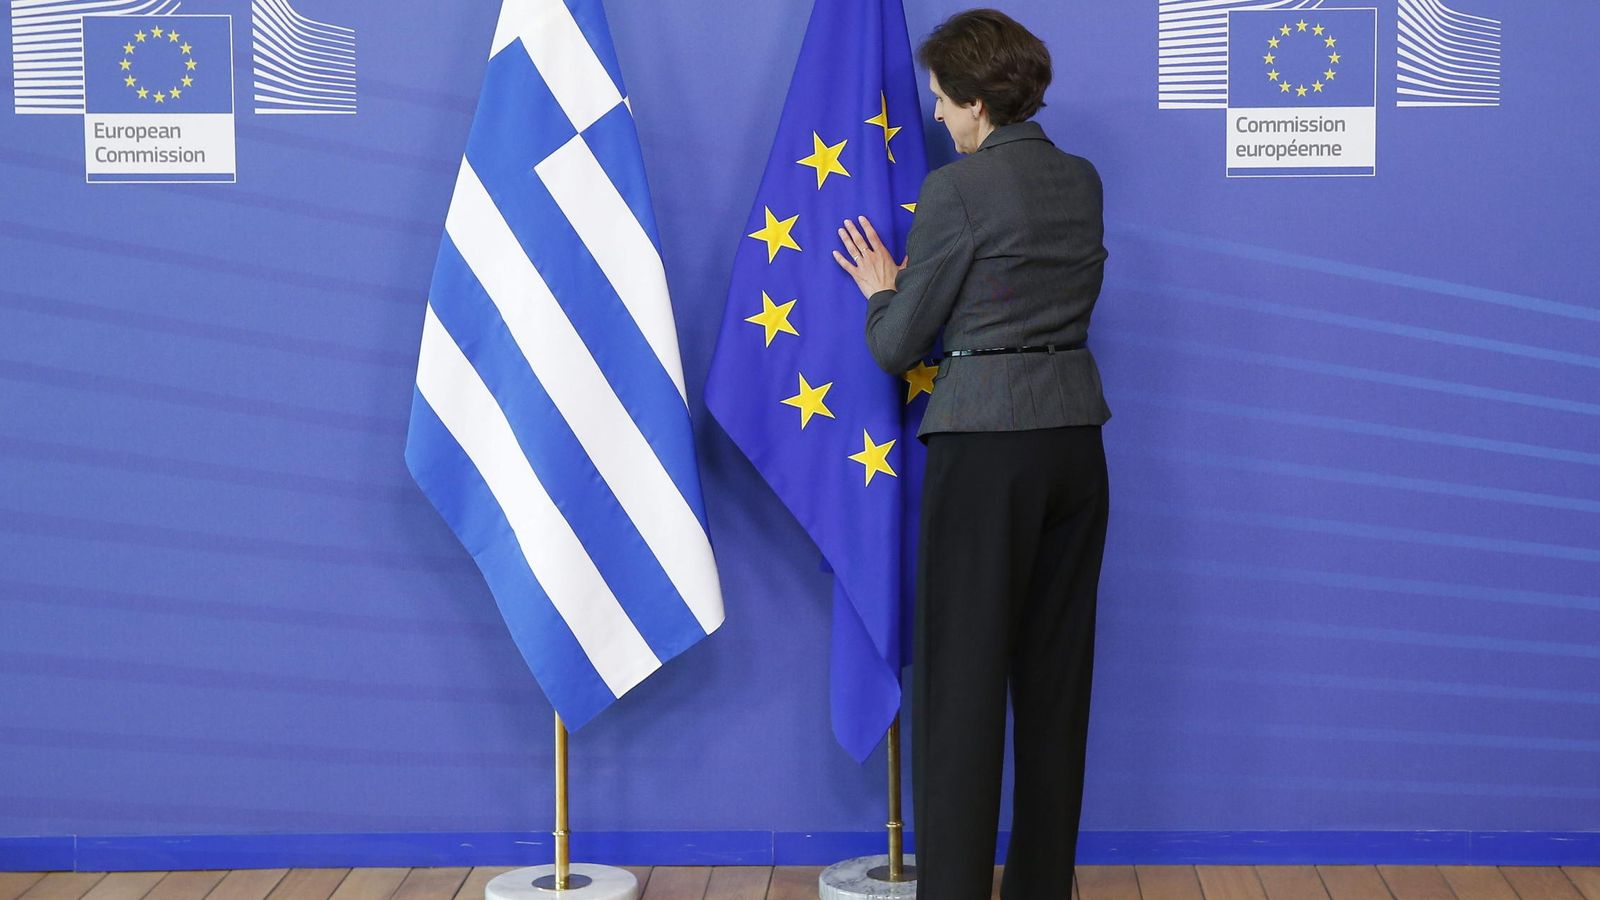 Foto: Siguen las negociaciones entre Grecia y el Eurogrupo. (EFE)